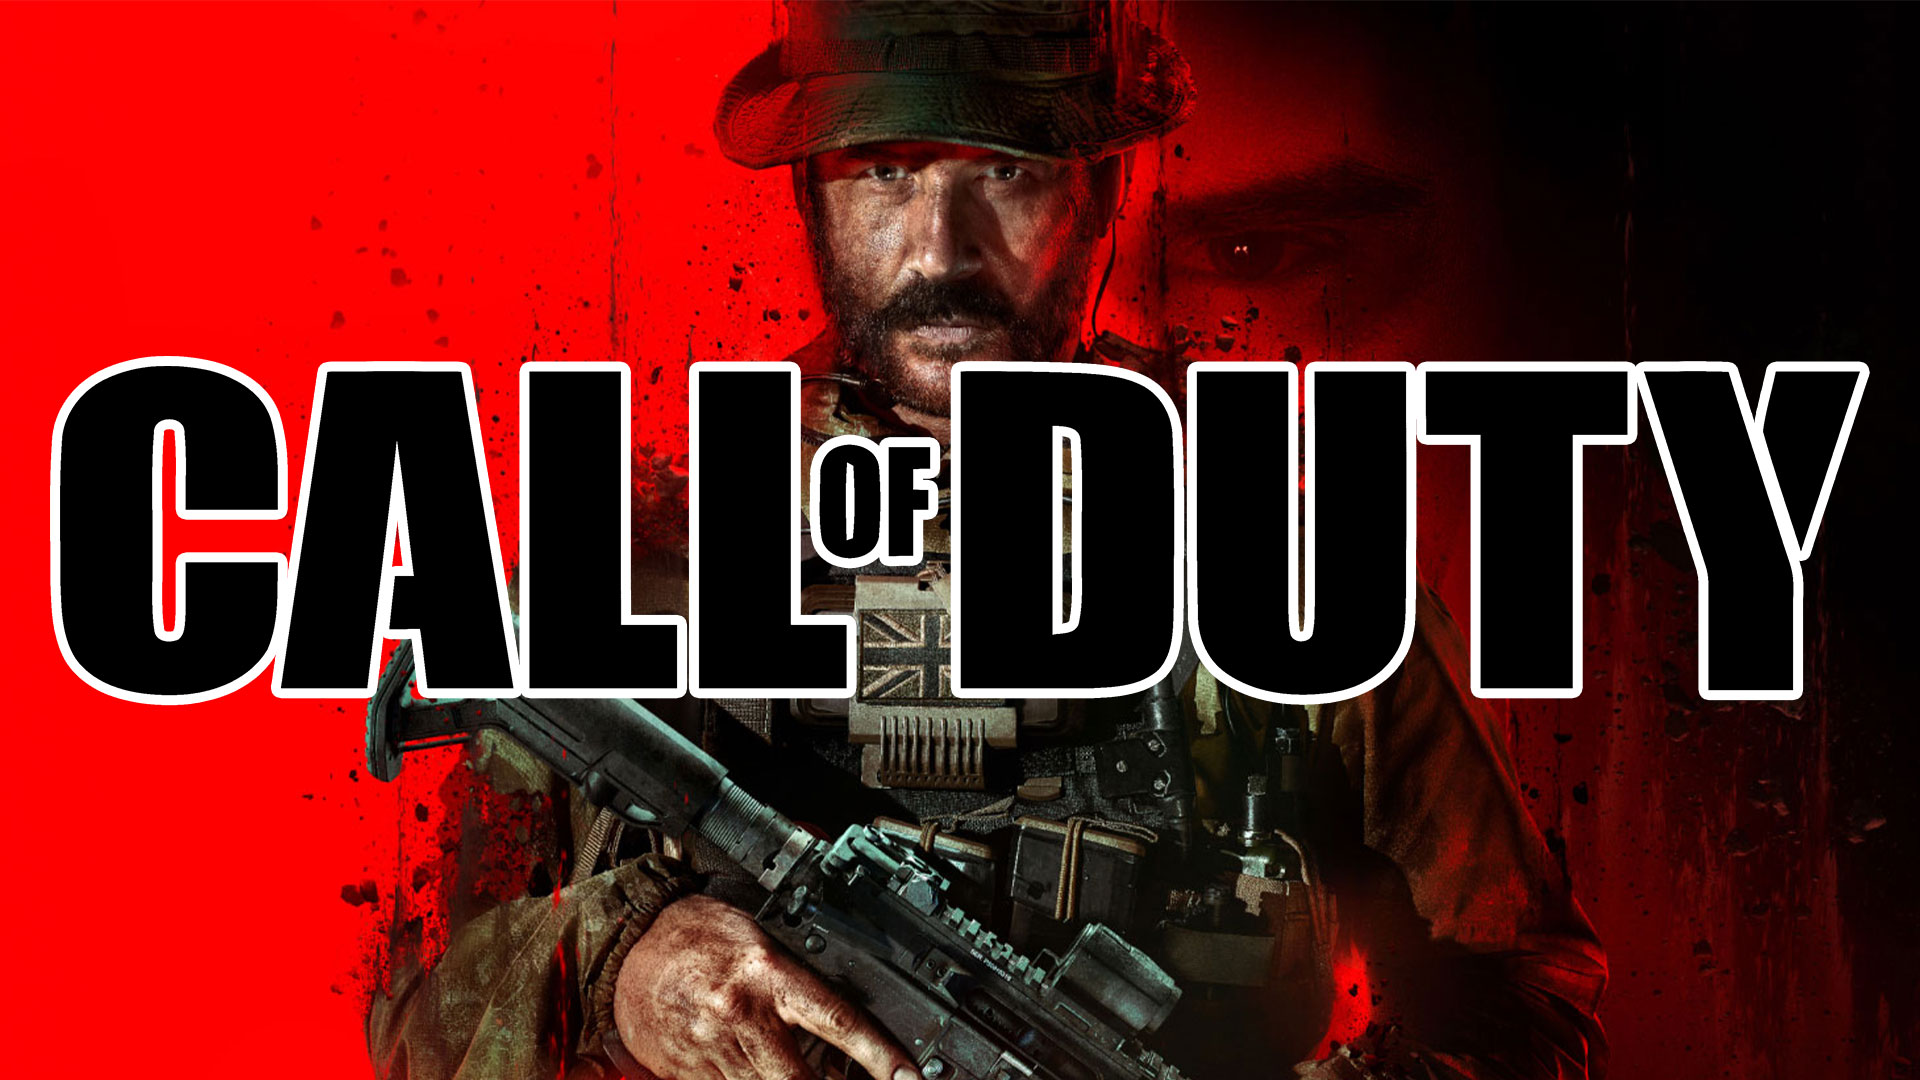 پرونده شکایت از سازنده بازی Call of Duty در آمریکا باز شد